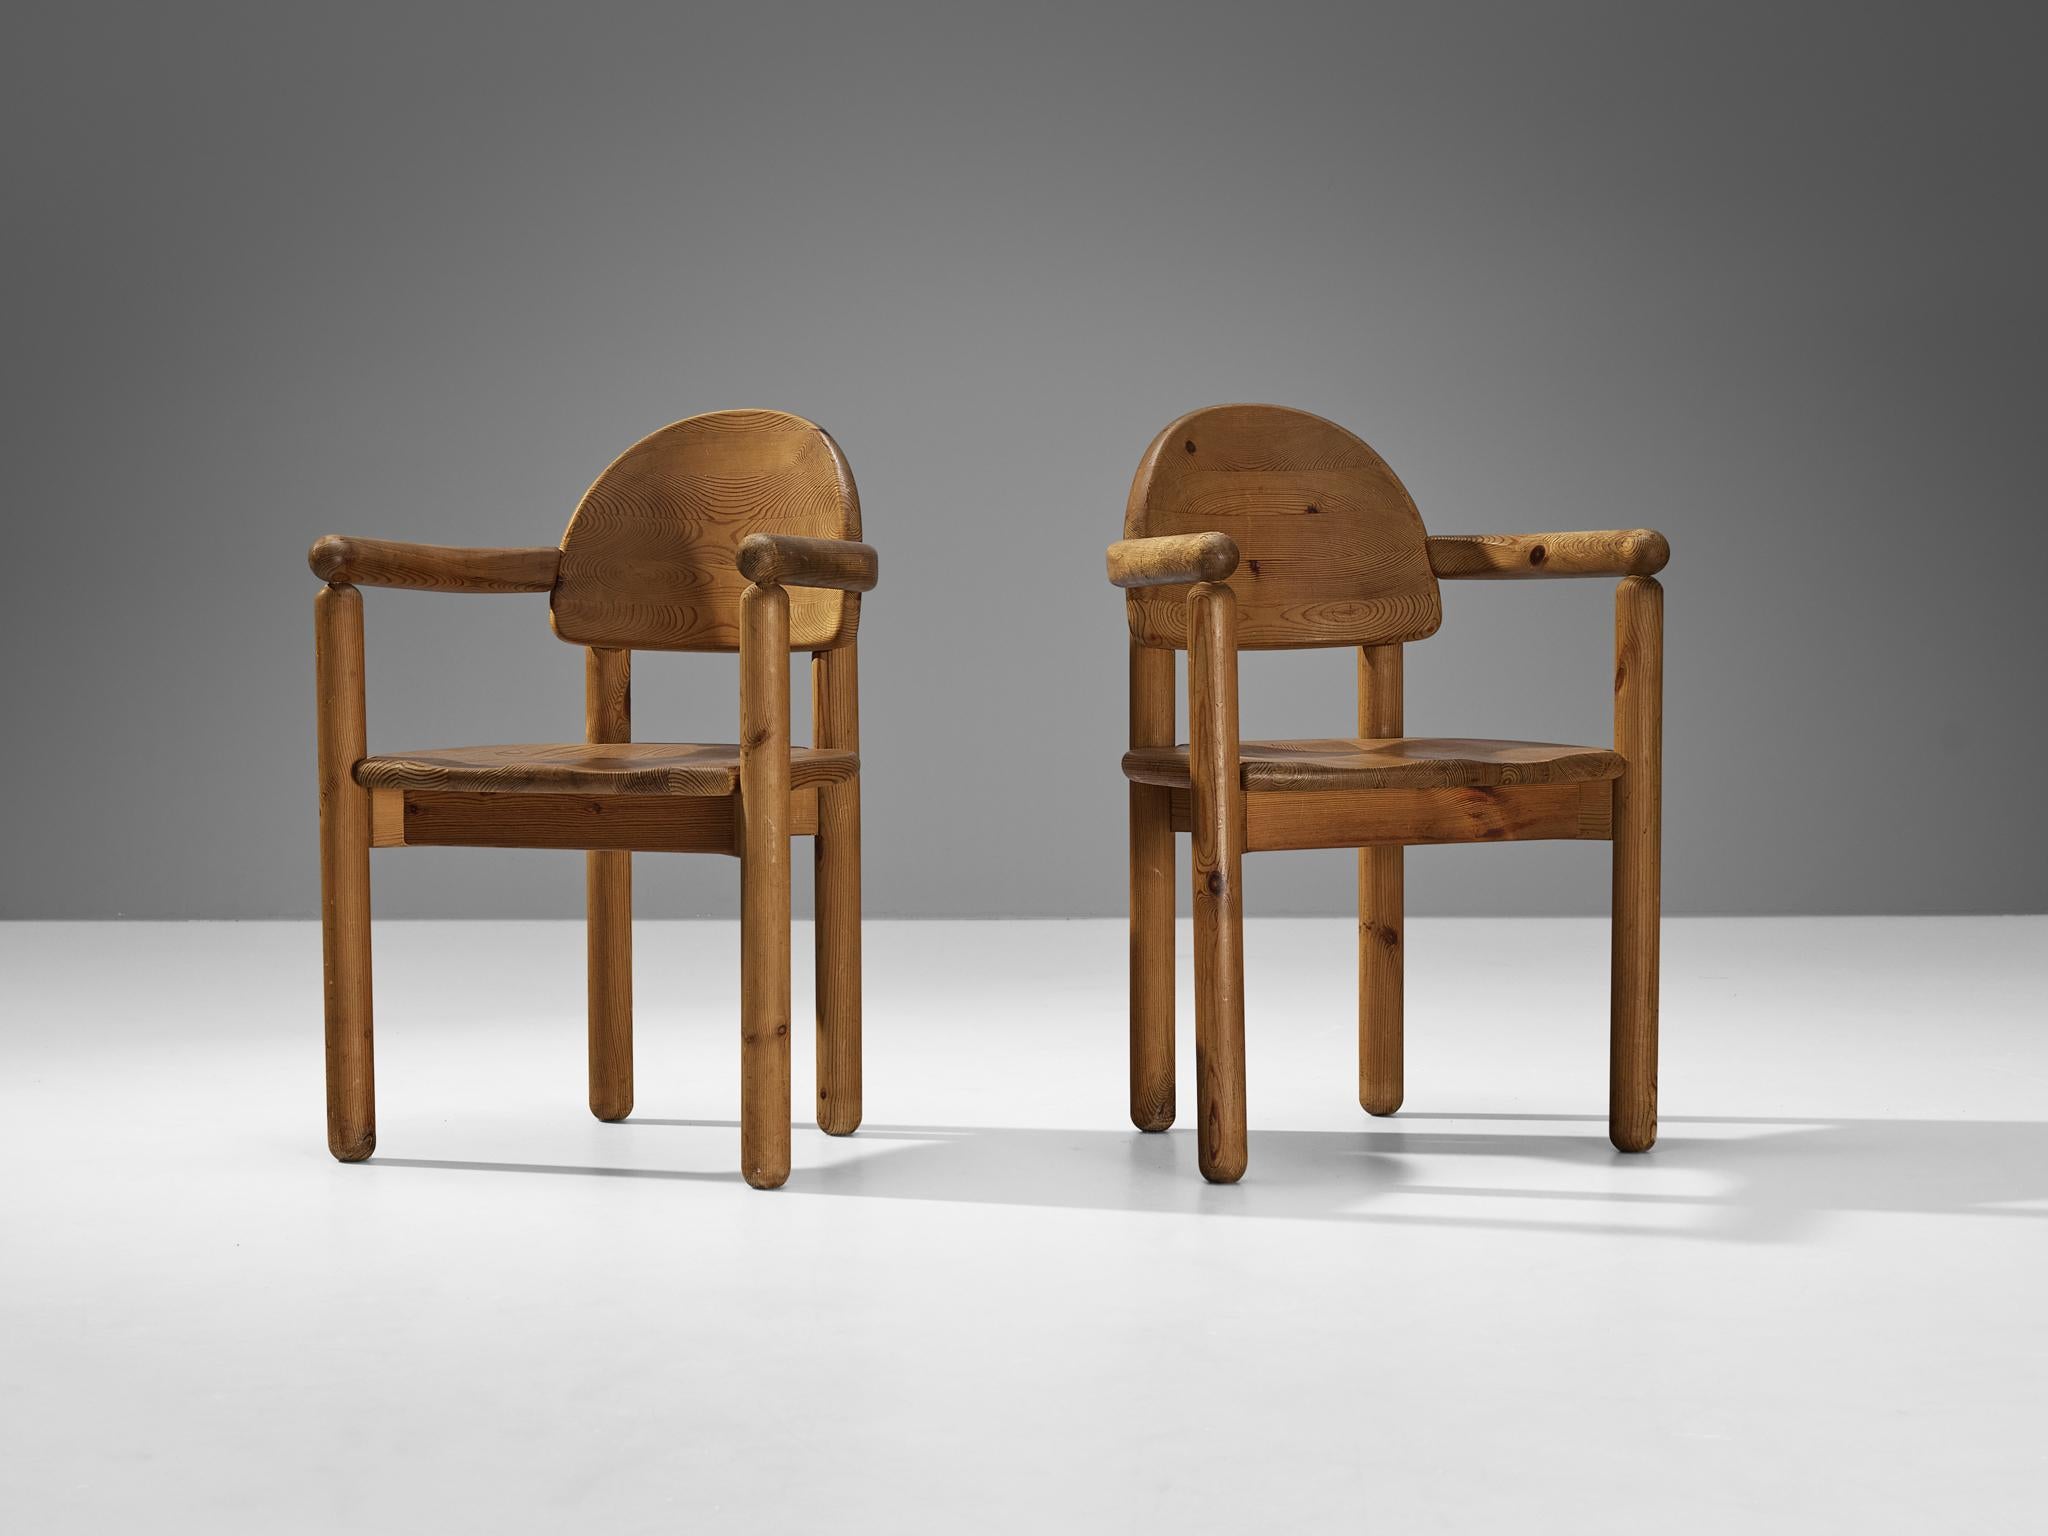 Rainer Daumiller pour Hirtshals Savvaerk, paire de fauteuils, pin, Danemark, années 1970.
 
Ces chaises de salle à manger du designer danois Rainer Daumiller présentent de multiples caractéristiques. Le grain vif du bois de pin chaud contribue à